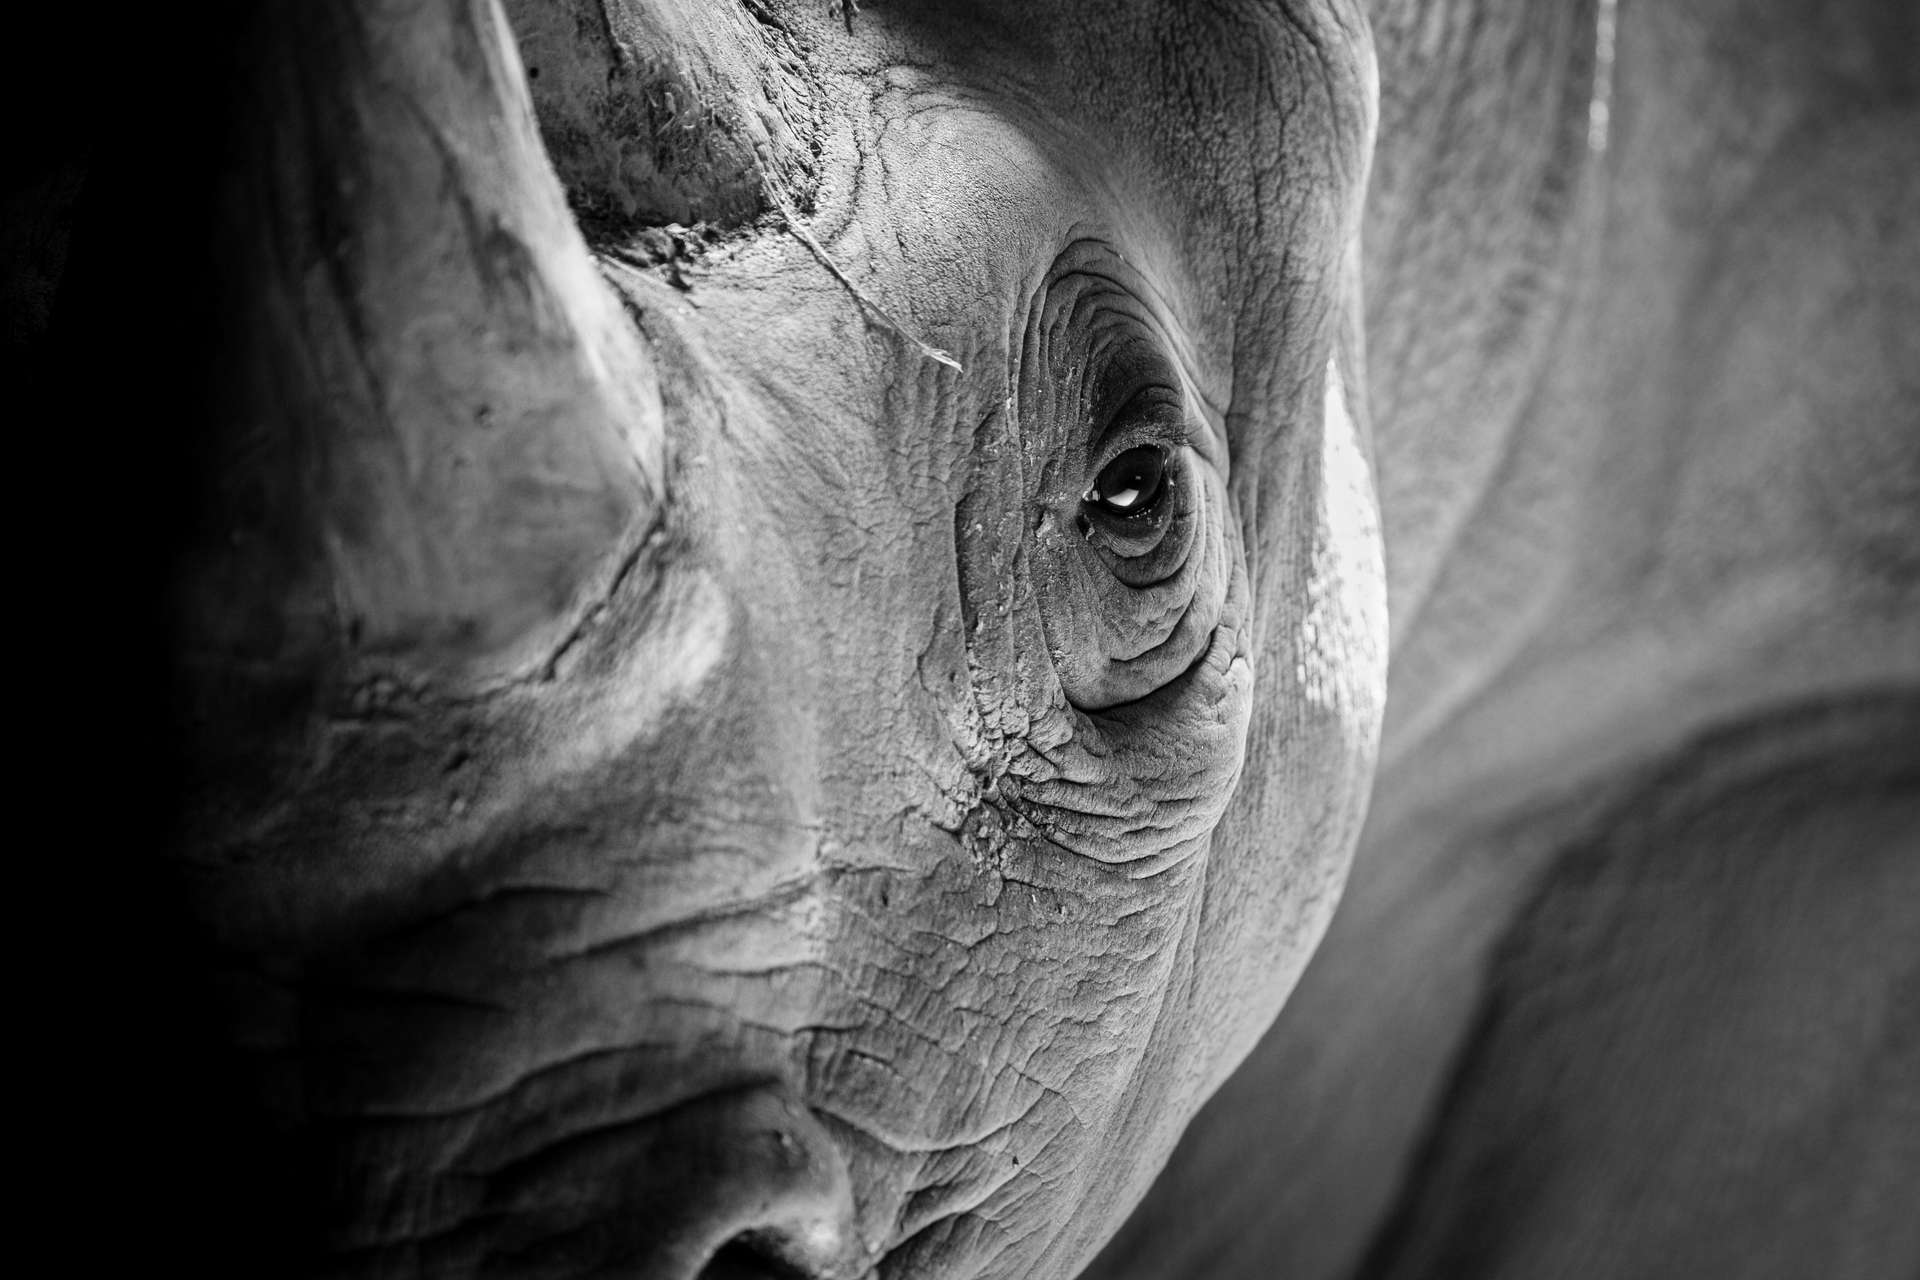 Les rhinocéros blancs se divisent en deux sous-espèces. Les rhinocéros blancs du Nord sont fonctionnellement éteints, ceux du Sud sont quasi menacés, mais en augmentation. © Sherrod Photography, Adobe Stock